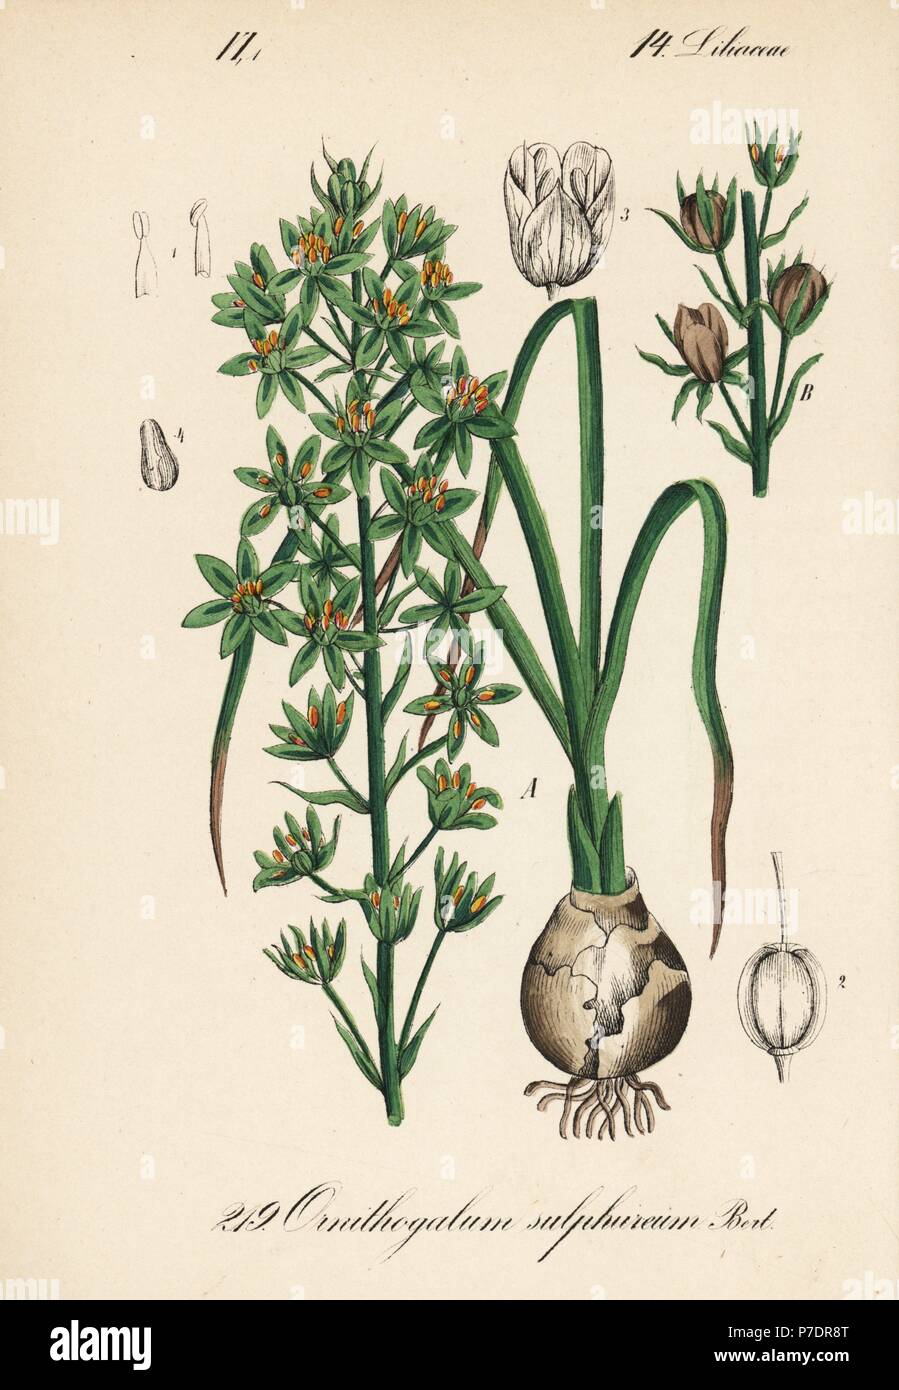 Prussian asparagus or wild asparagus, Ornithogalum pyrenaicum (Ornithogalum sulphureum). Handcoloured lithograph from Diederich von Schlechtendal's German Flora (Flora von Deutschland), Jena, 1871. Stock Photo